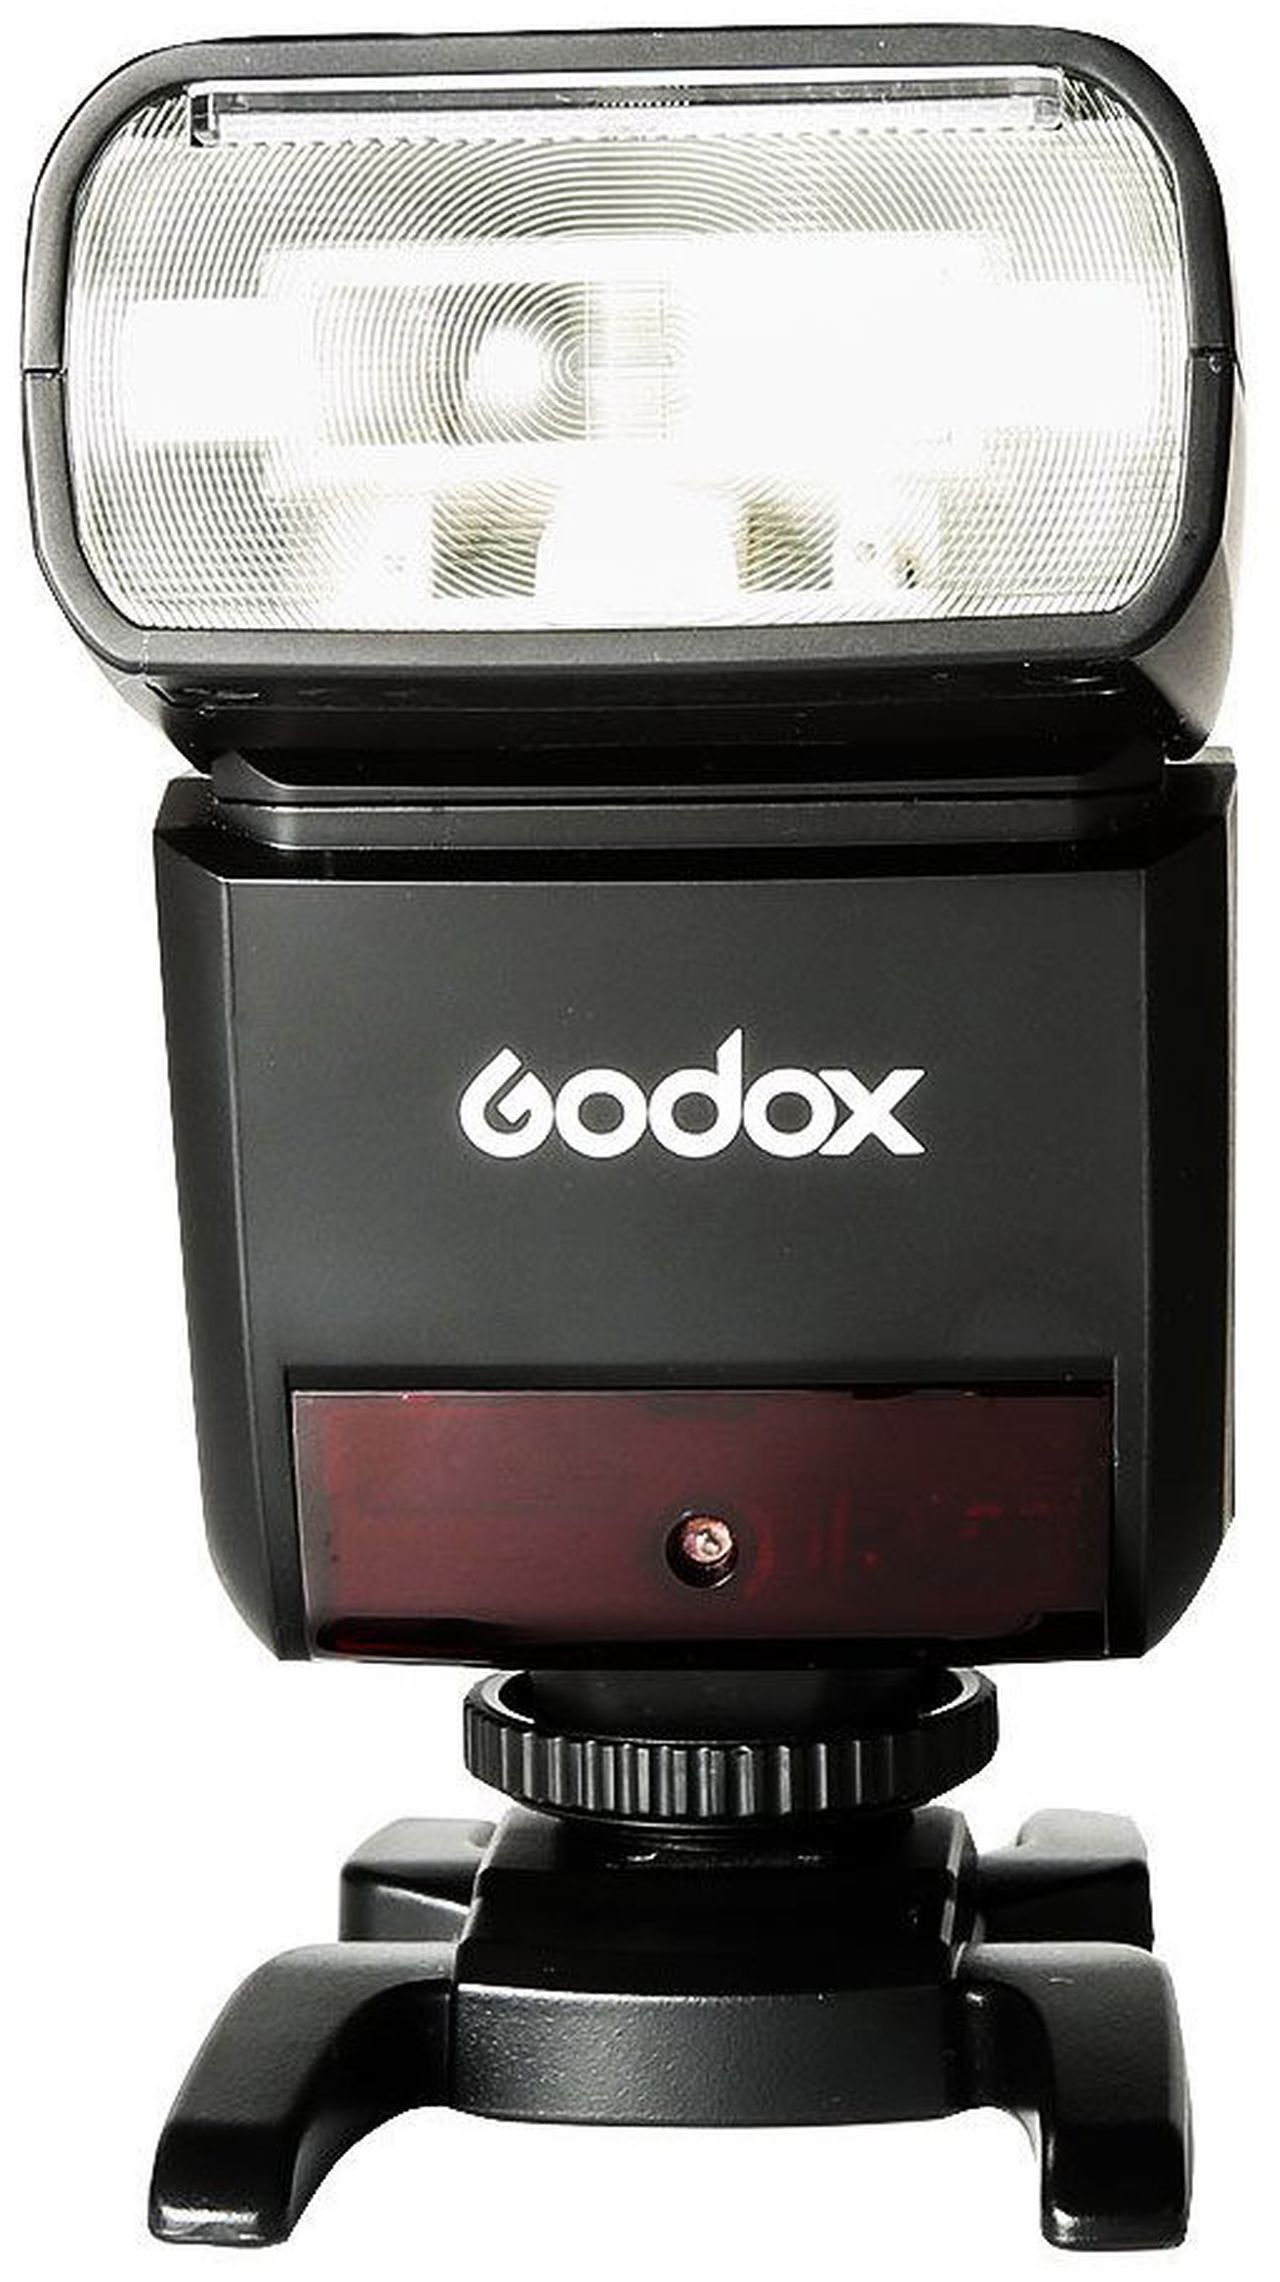 Godox TT350 flash unit for Nikon - Foto Erhardt